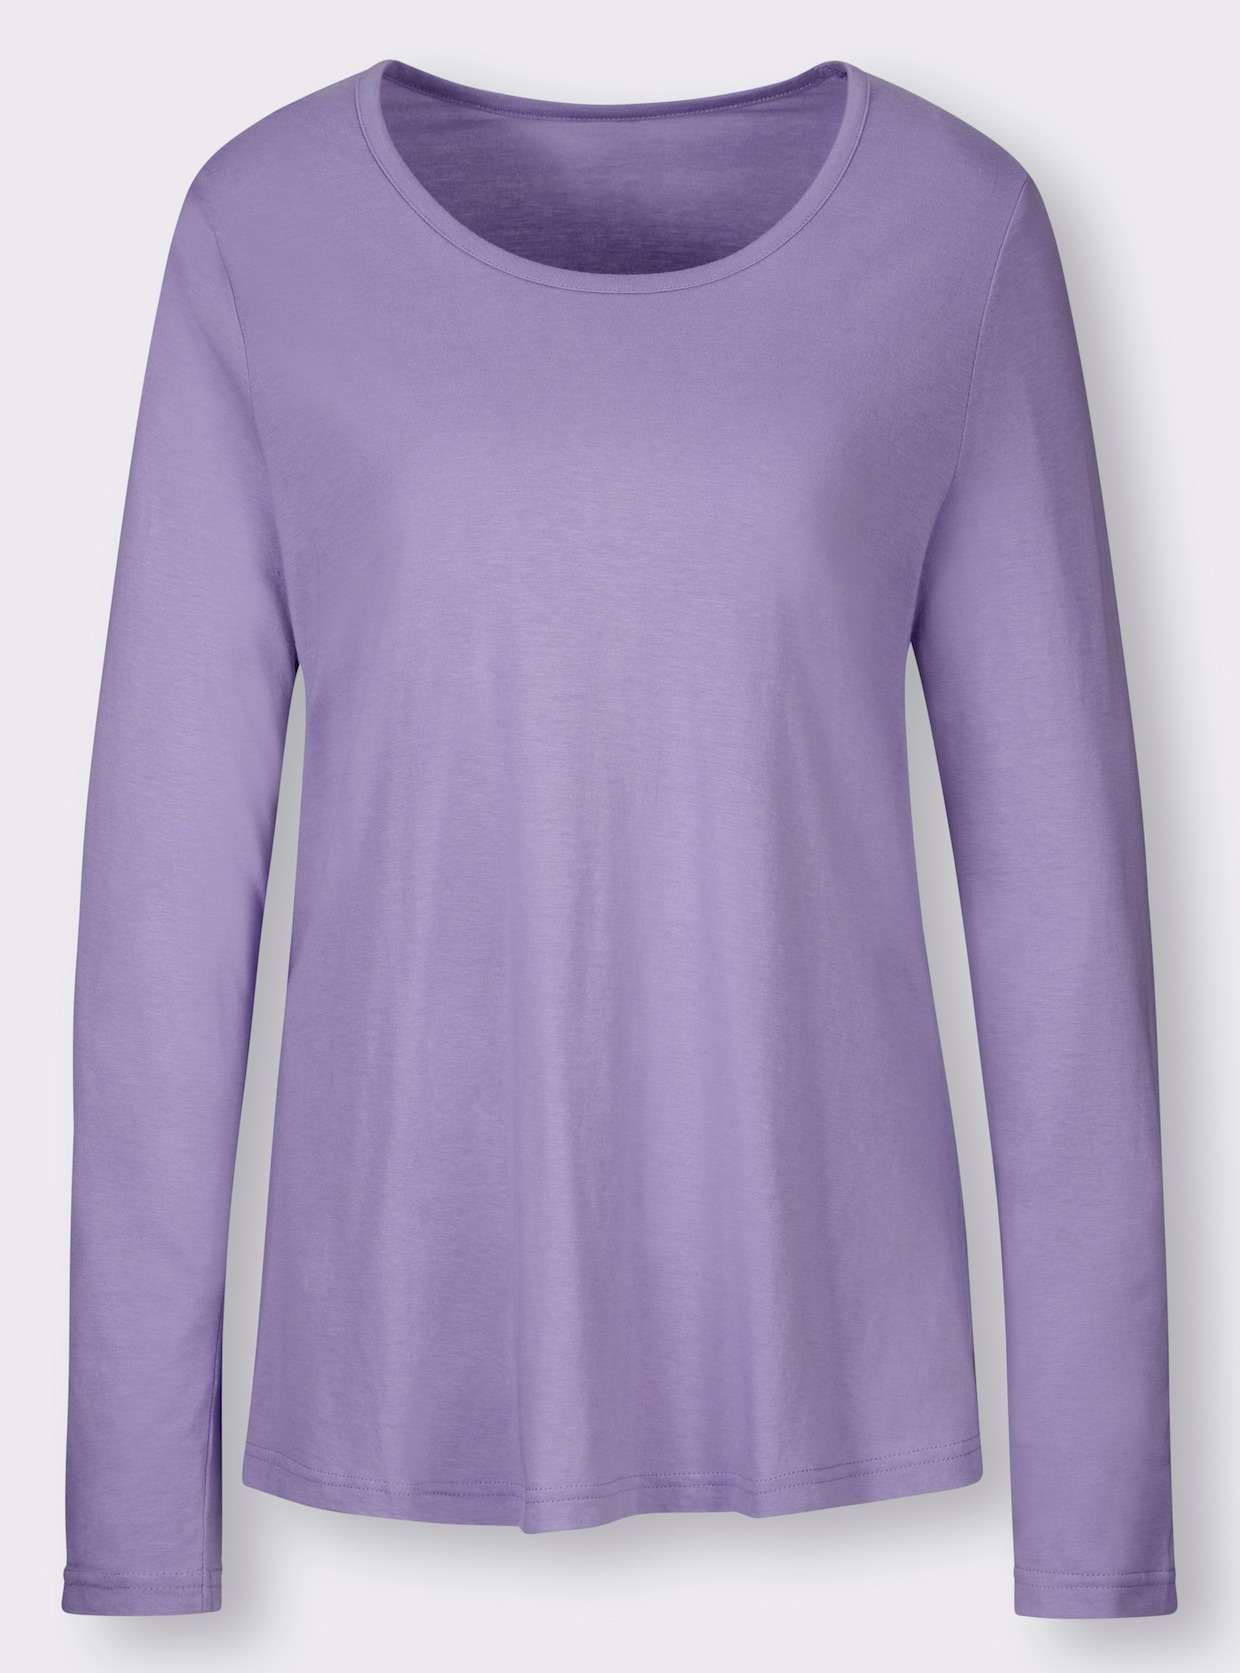 wäschepur Schlafanzug - lavendel-lila-bedruckt